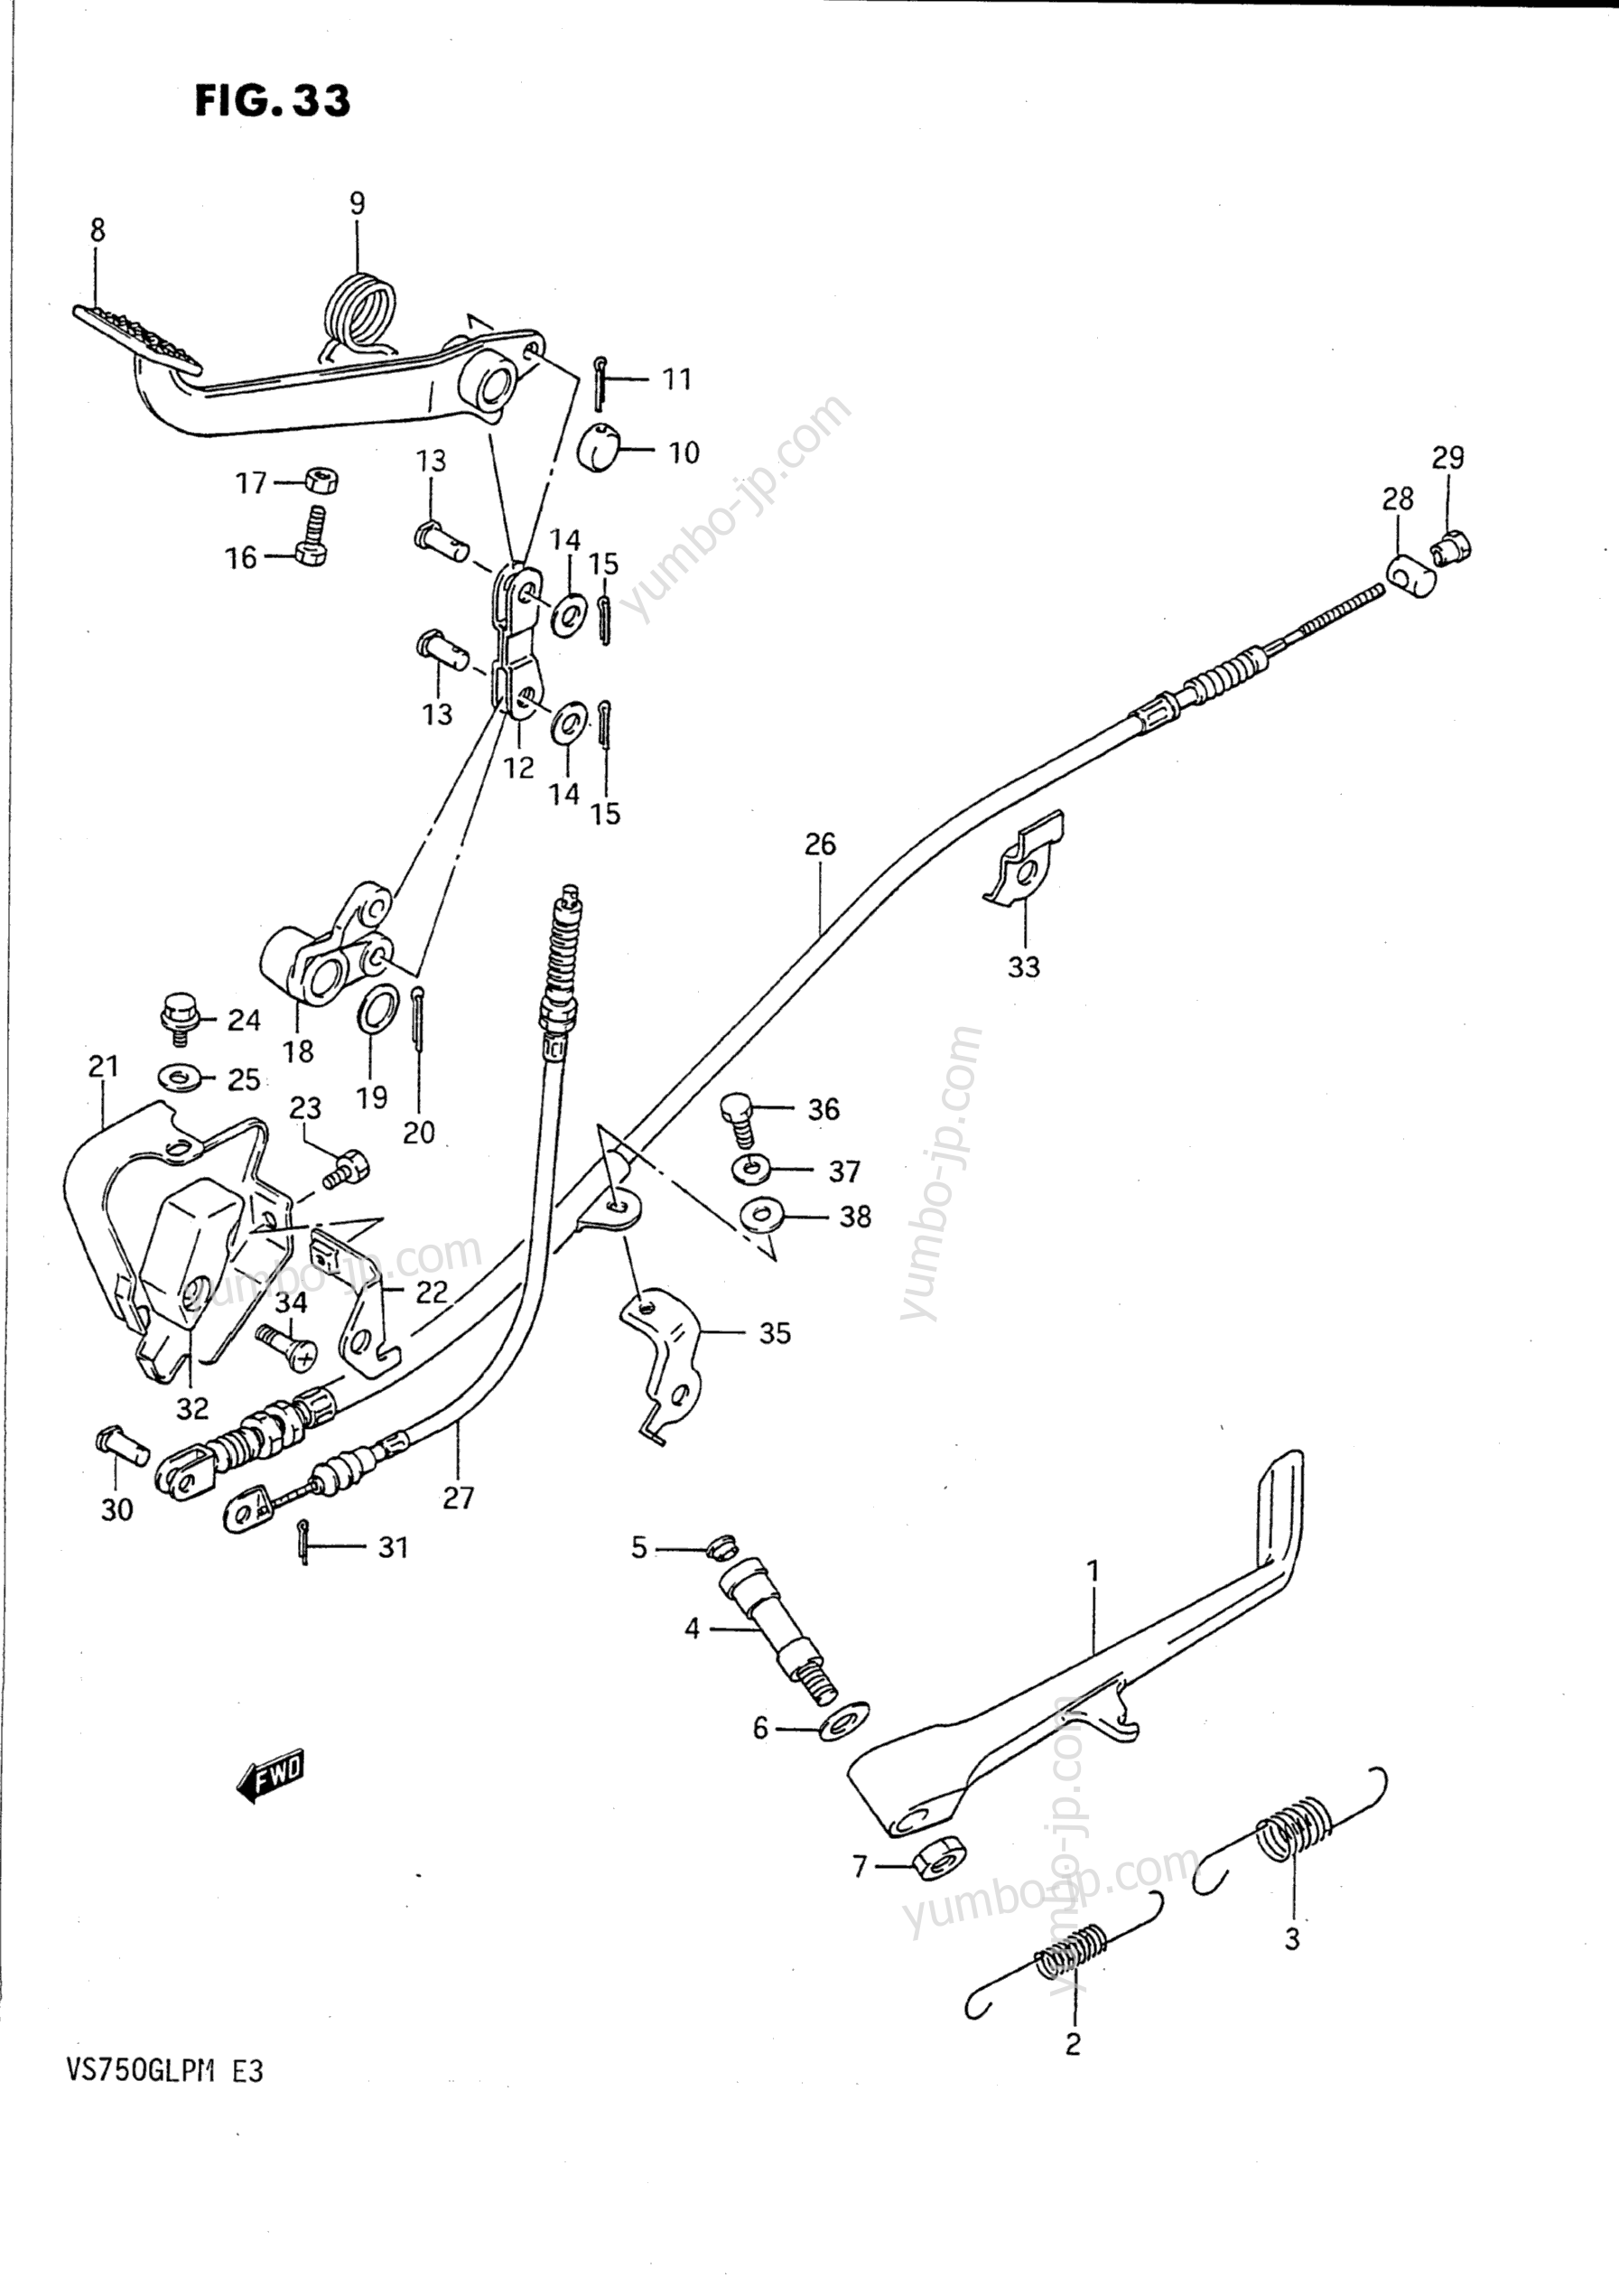 PROP STAND - REAR BRAKE for motorcycles SUZUKI Intruder (VS750GLP) 1988 year